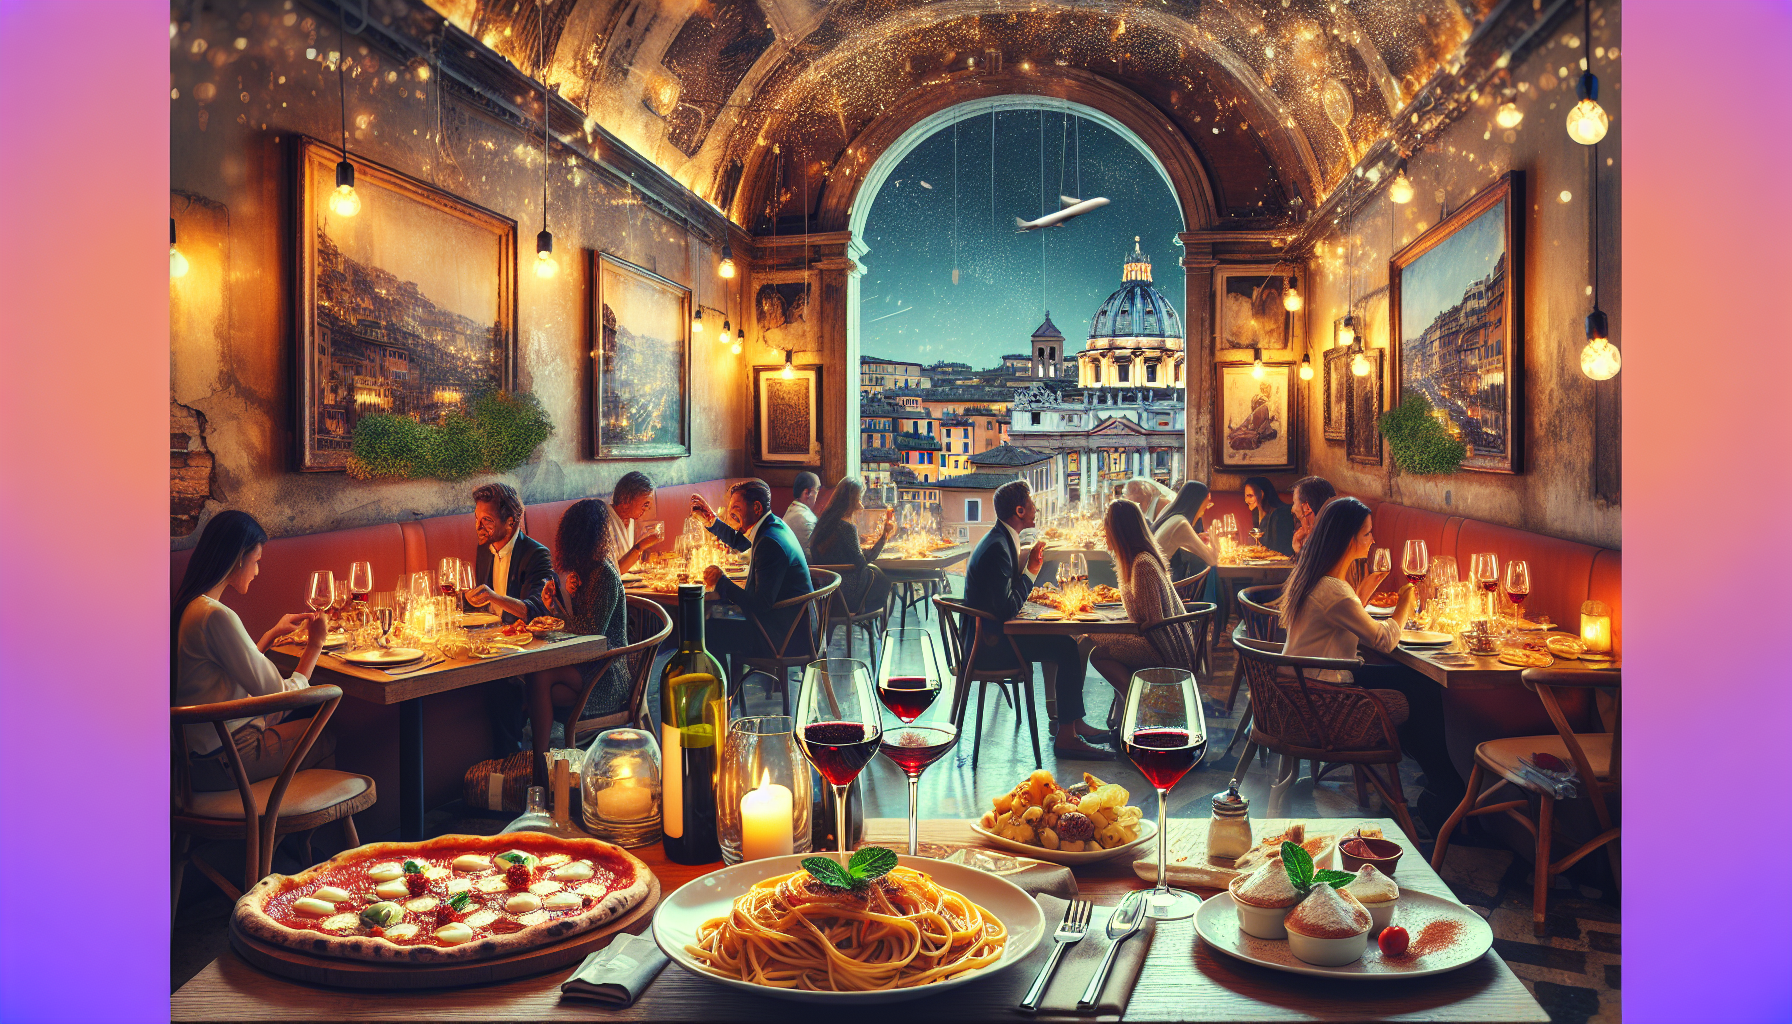 découvrez le meilleur restaurant de rome où se régaler en italie avec des plats délicieux et une ambiance authentique. réservez votre table dès maintenant !